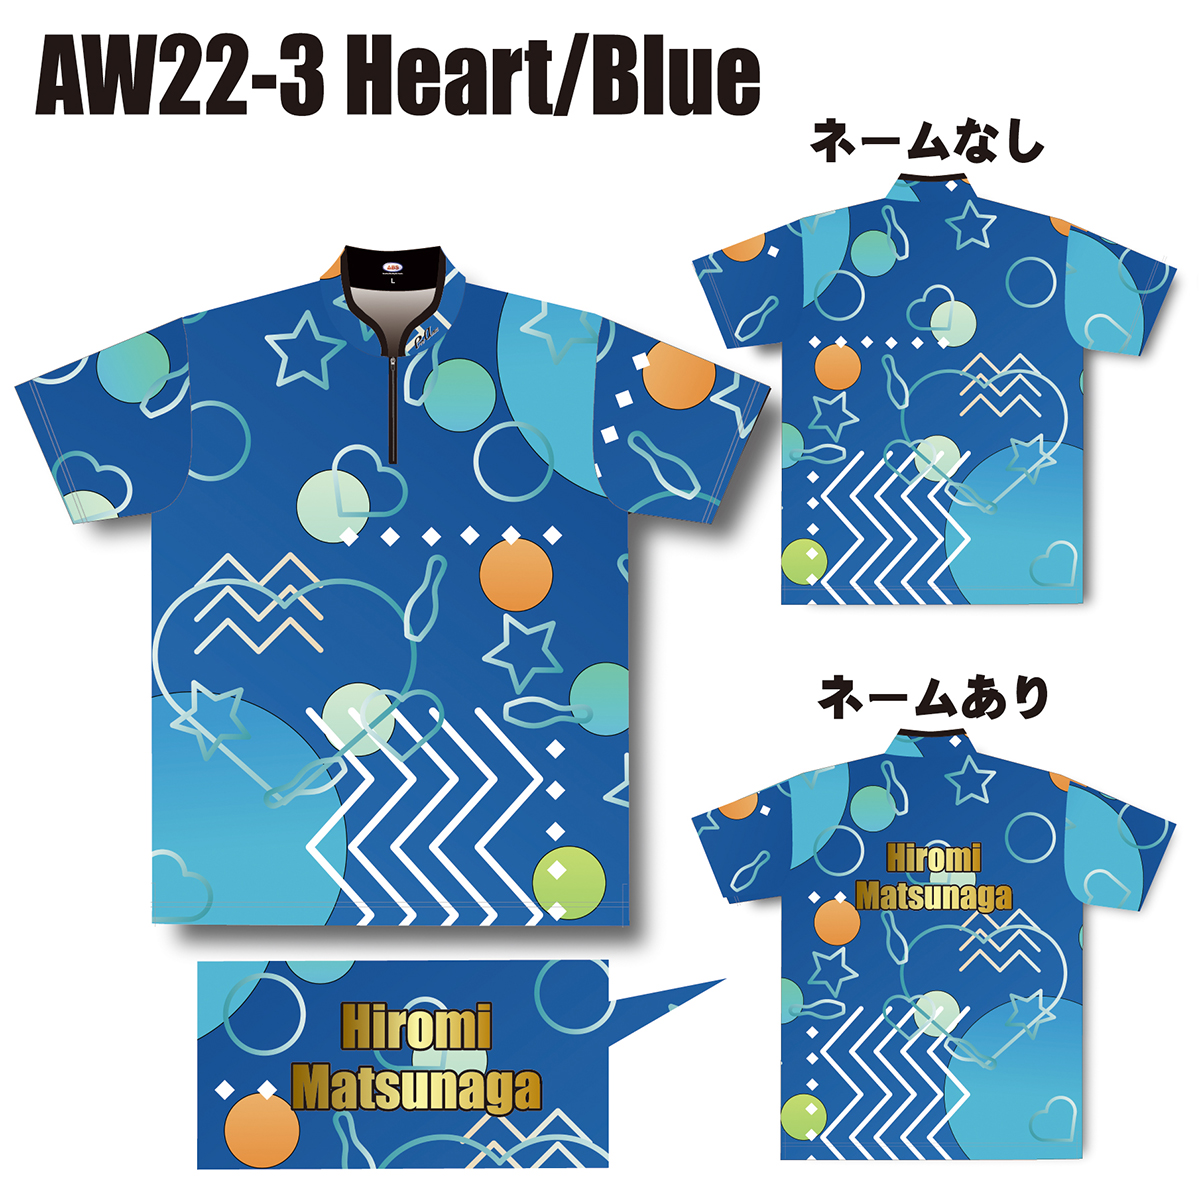 2022スプリングモデル(AW22-3 Heart/Blue)